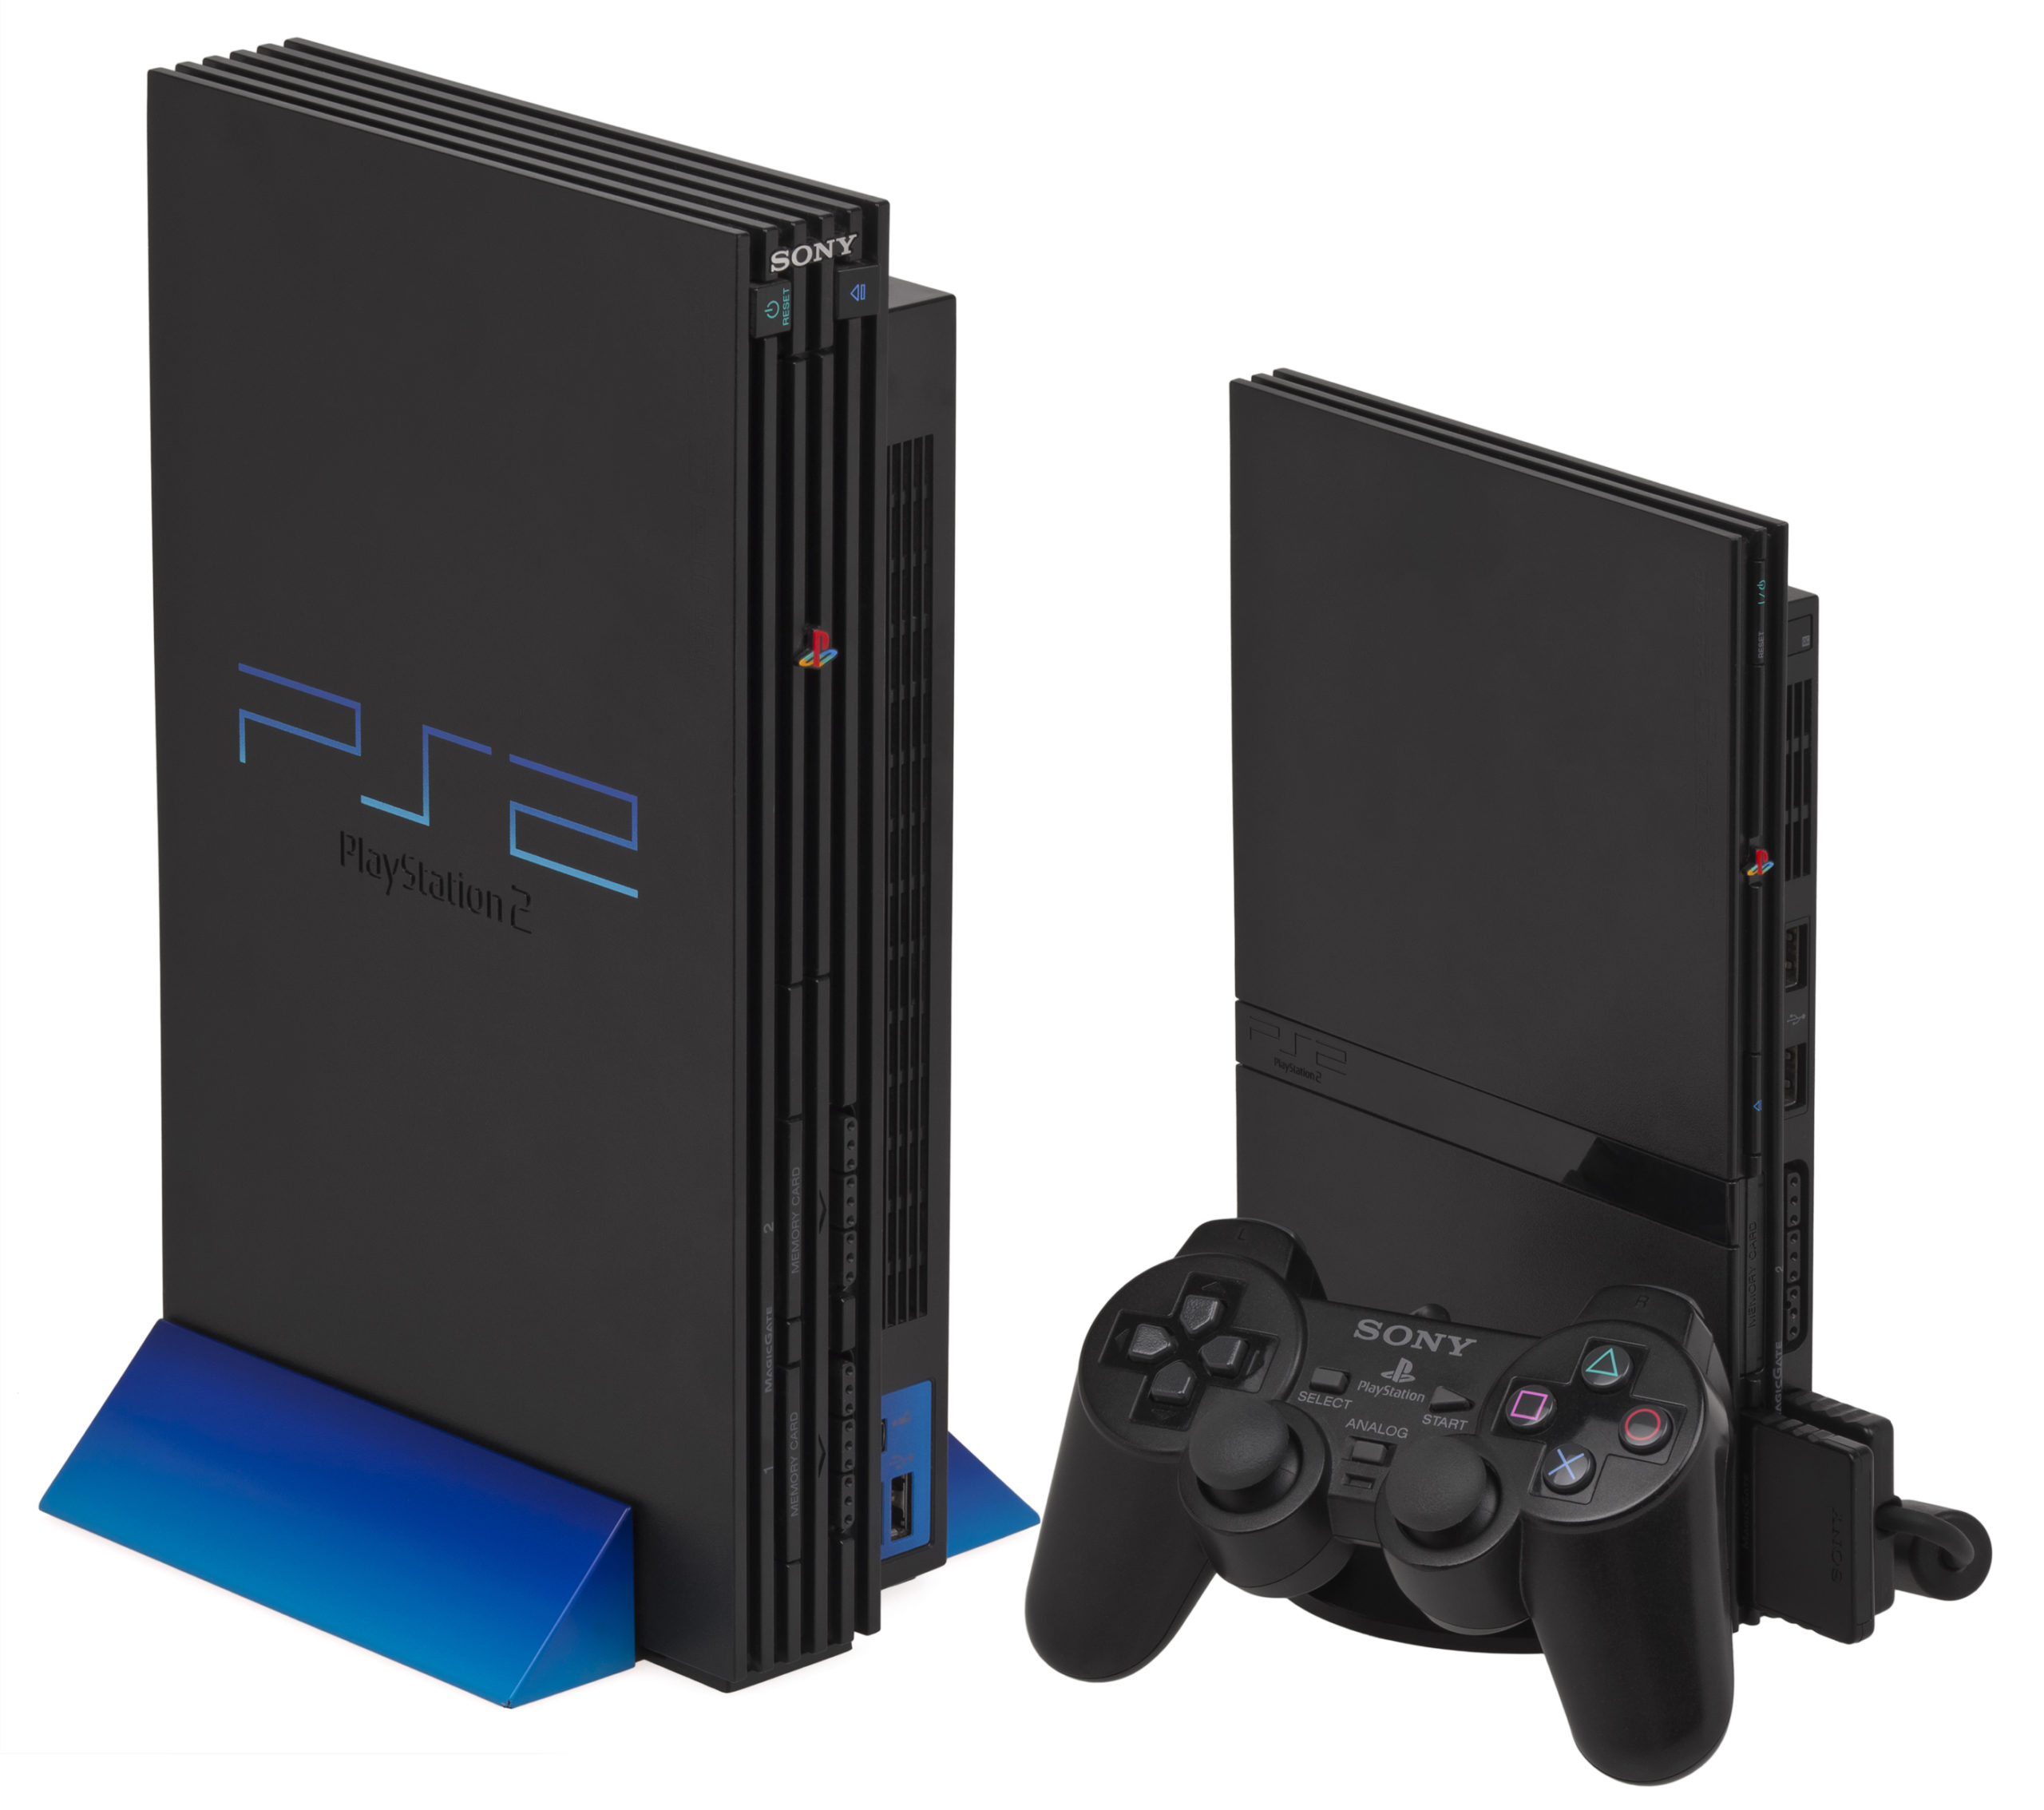 La Playstation 2 de Sony devrait conserver la première place encore longtemps avec plus de 157 millions d'exemplaires vendus